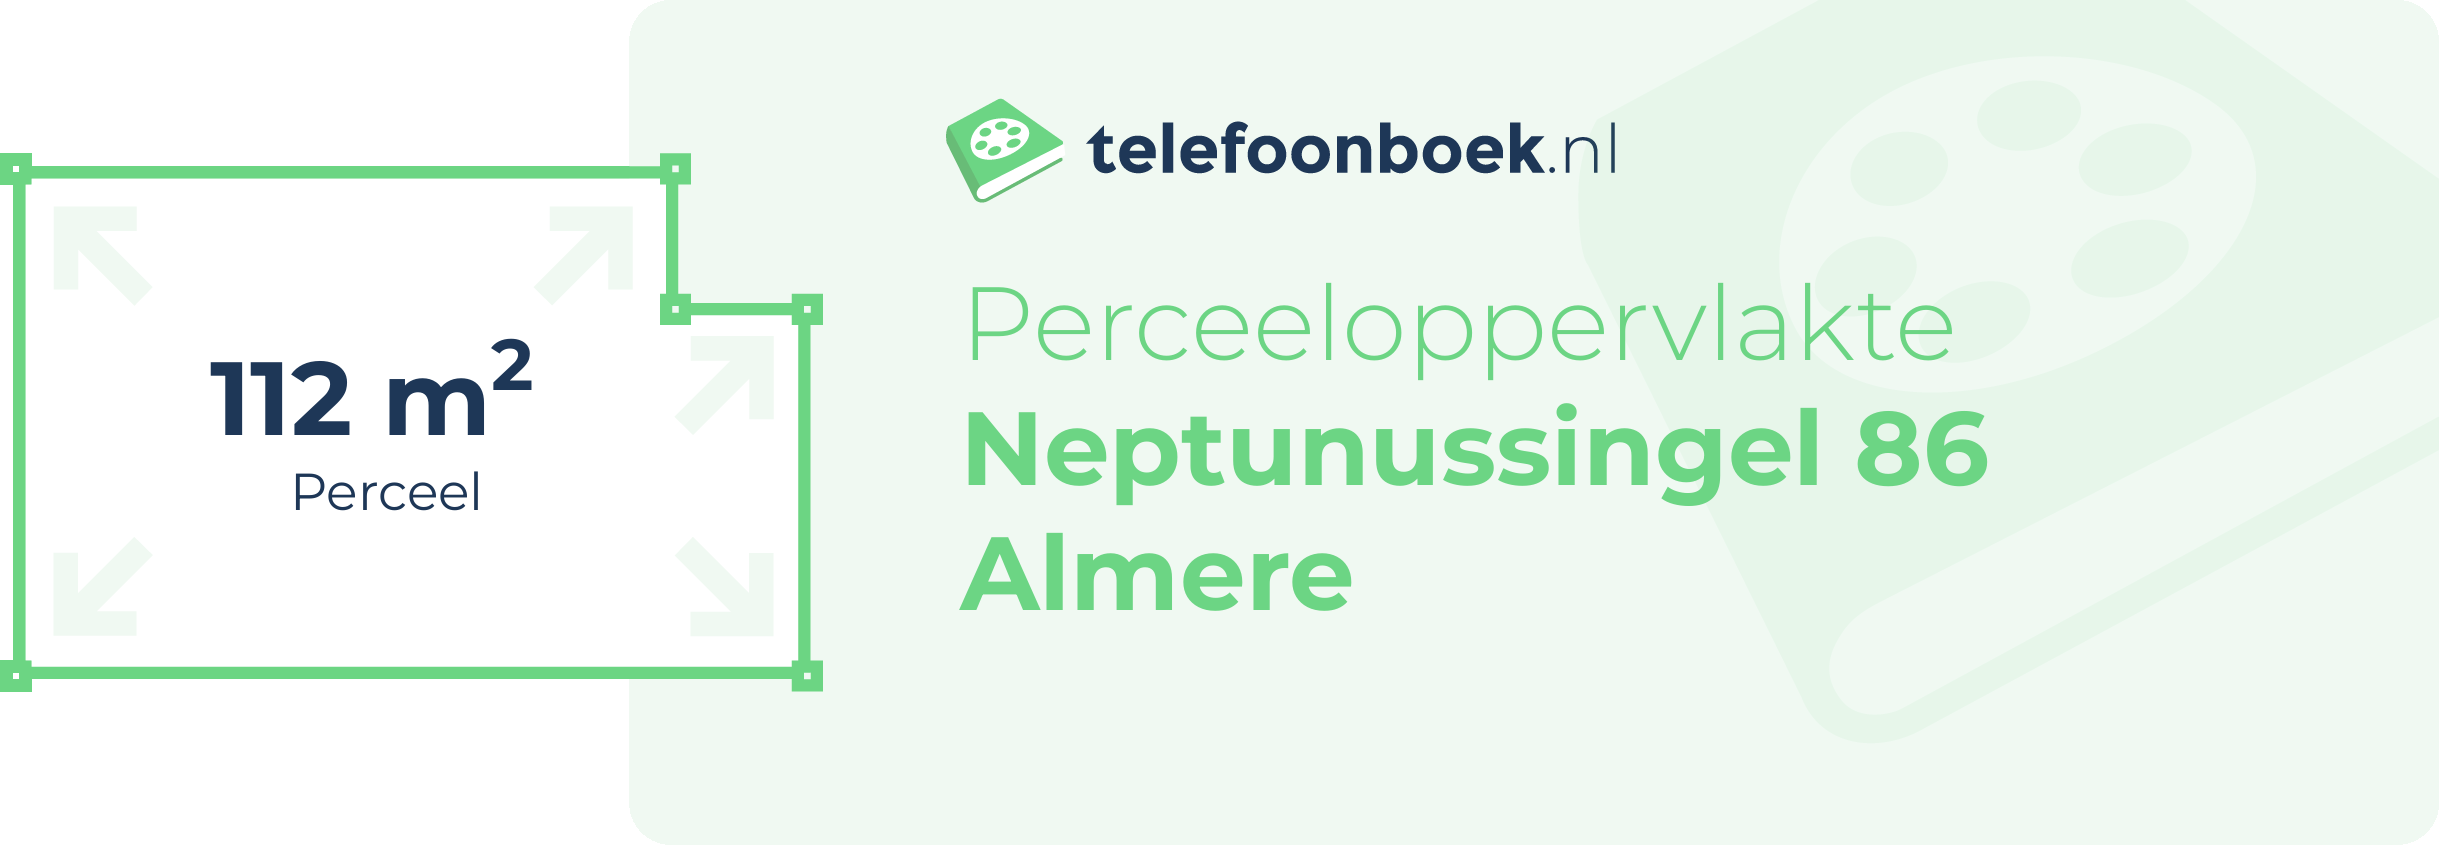 Perceeloppervlakte Neptunussingel 86 Almere